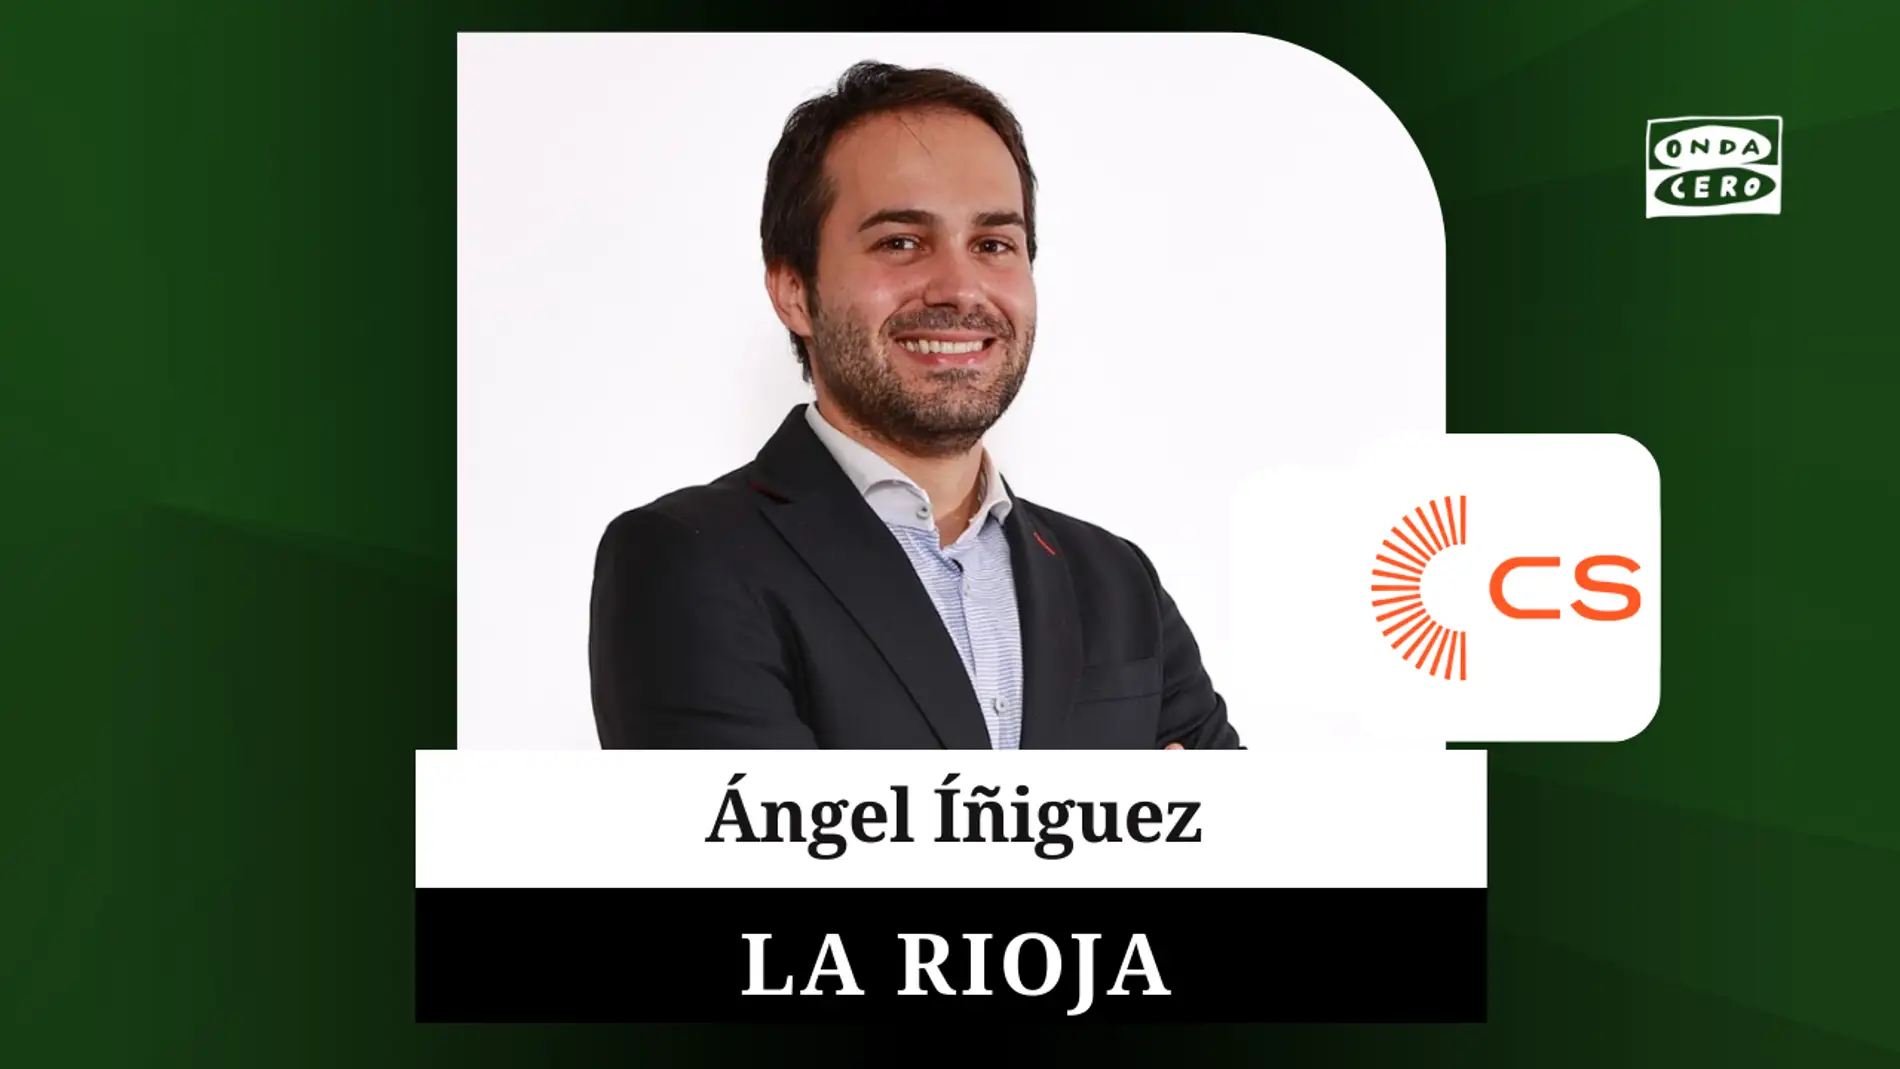 El abogado y empresario Ángel Iñiguez aspira a mantener a Ciudadanos en el Parlamento de La Rioja